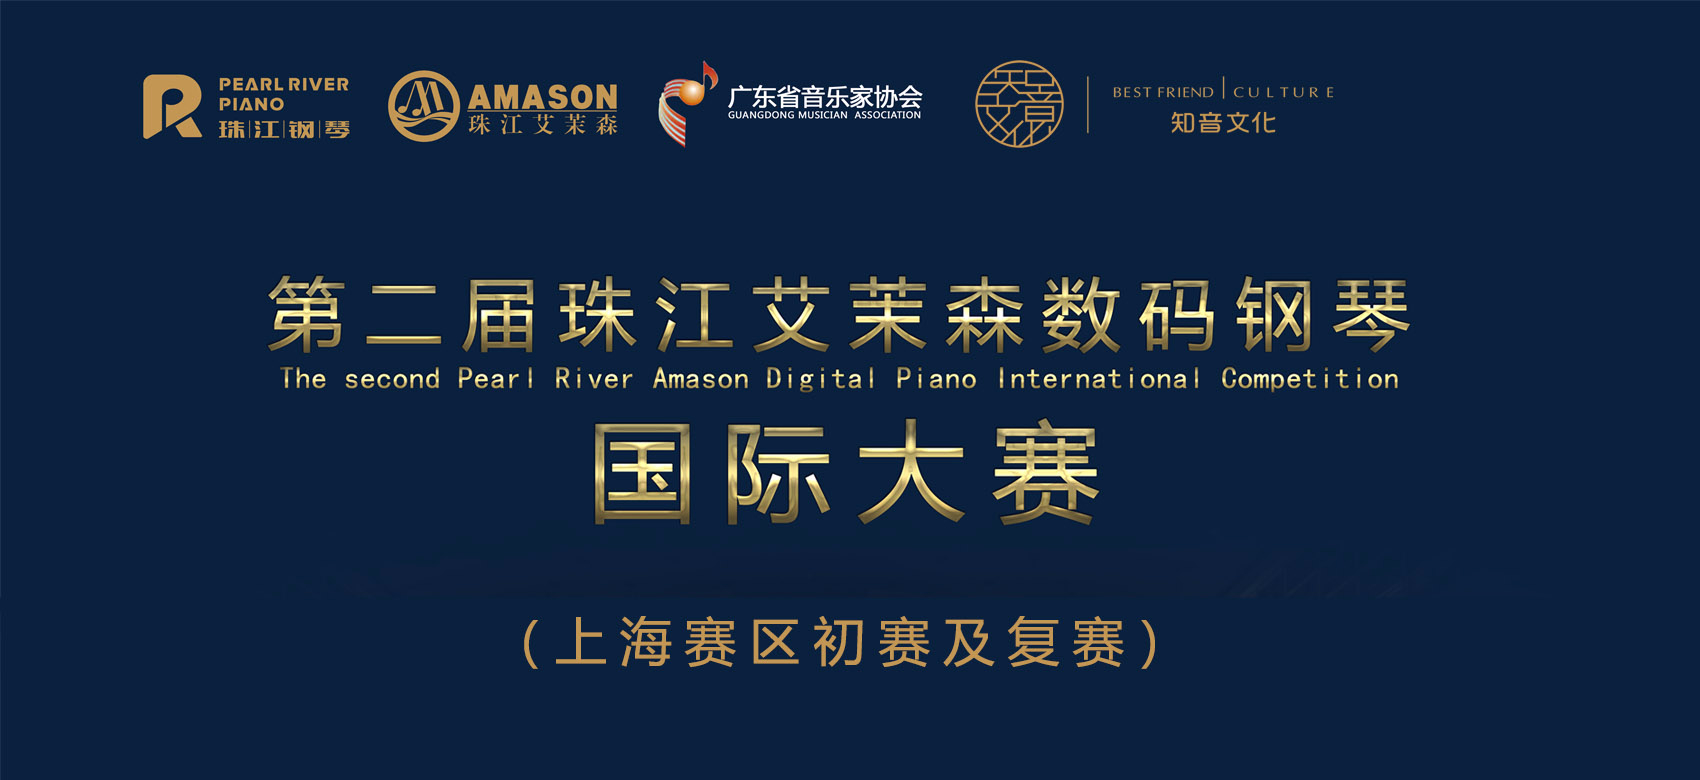 第二届珠江艾茉森数码钢琴国际大赛（上海赛区），开始报名！